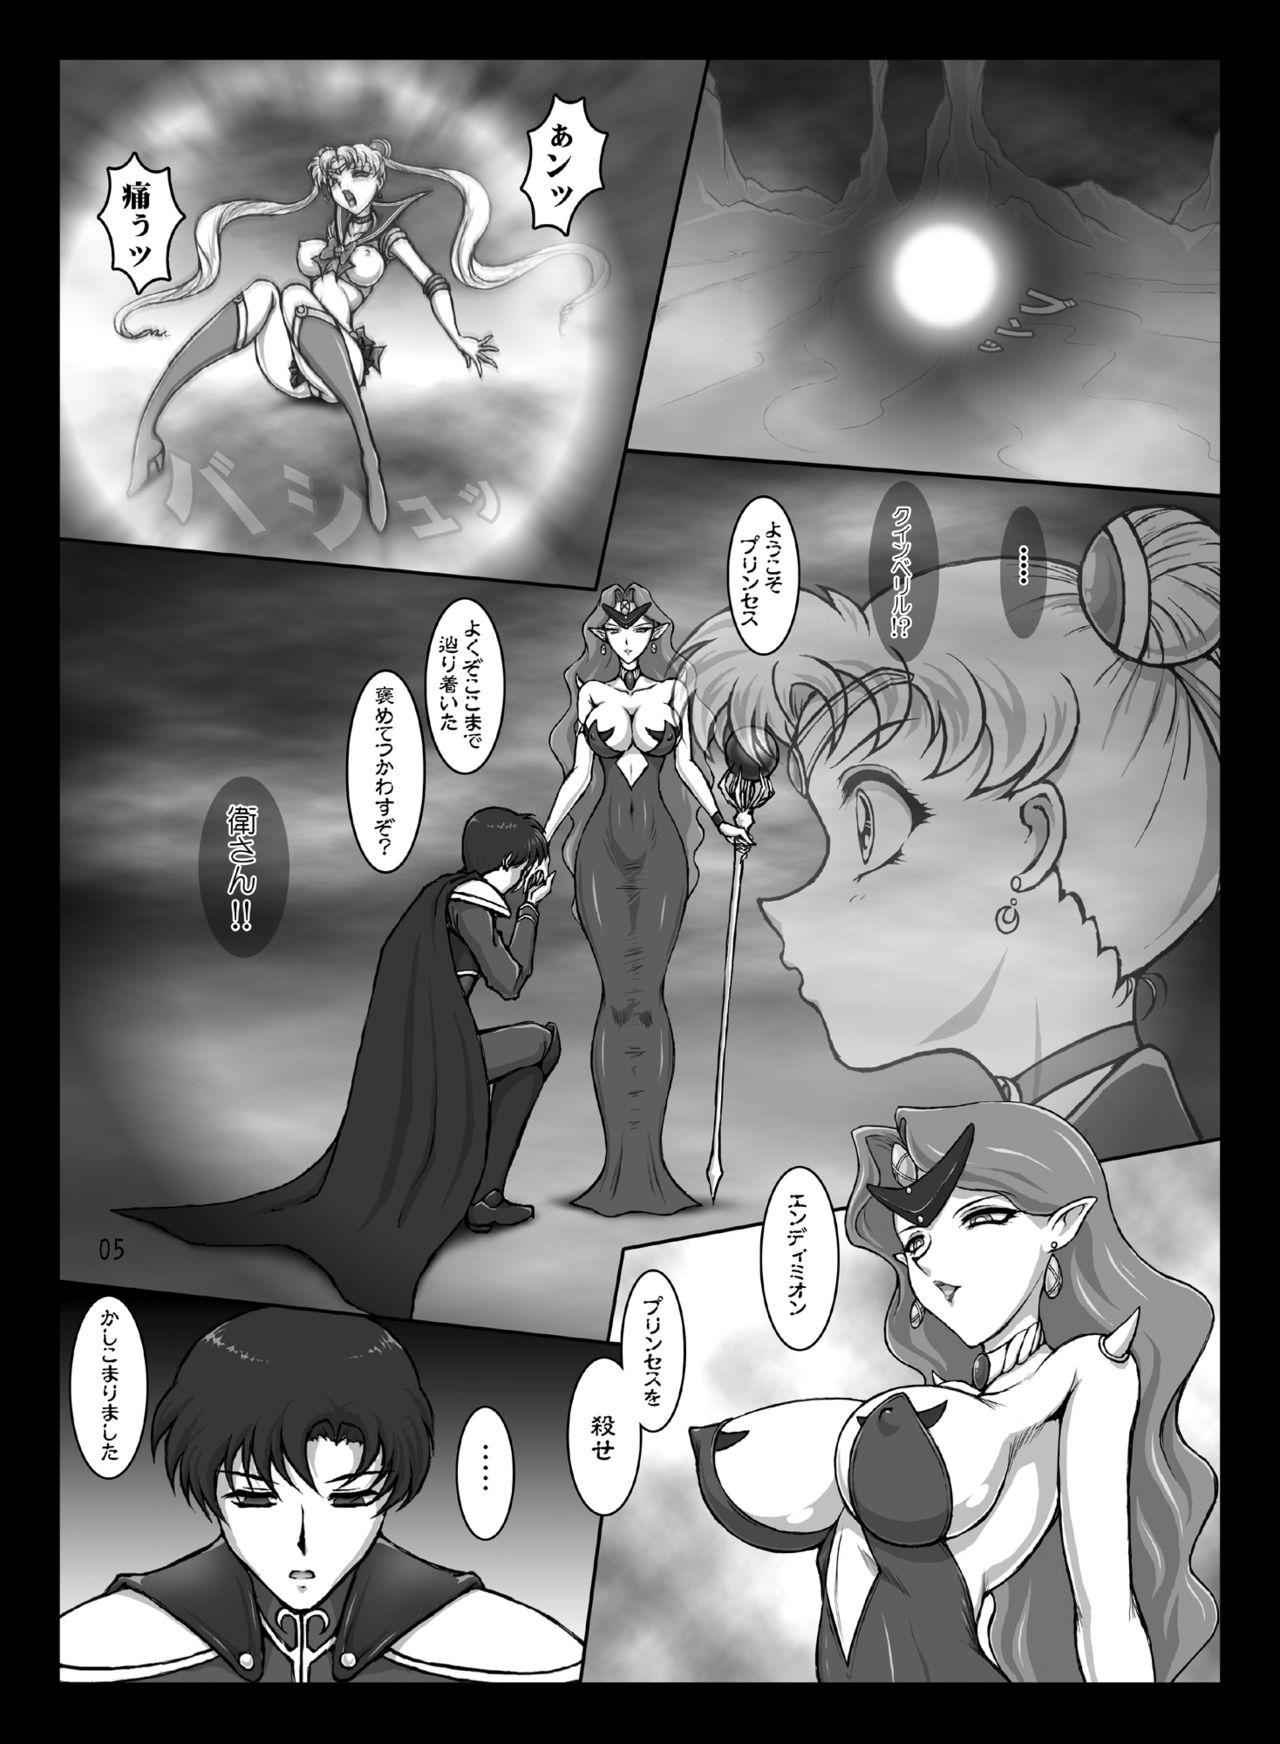 Nalgas Waning Moon - Sailor moon Peru - Page 4